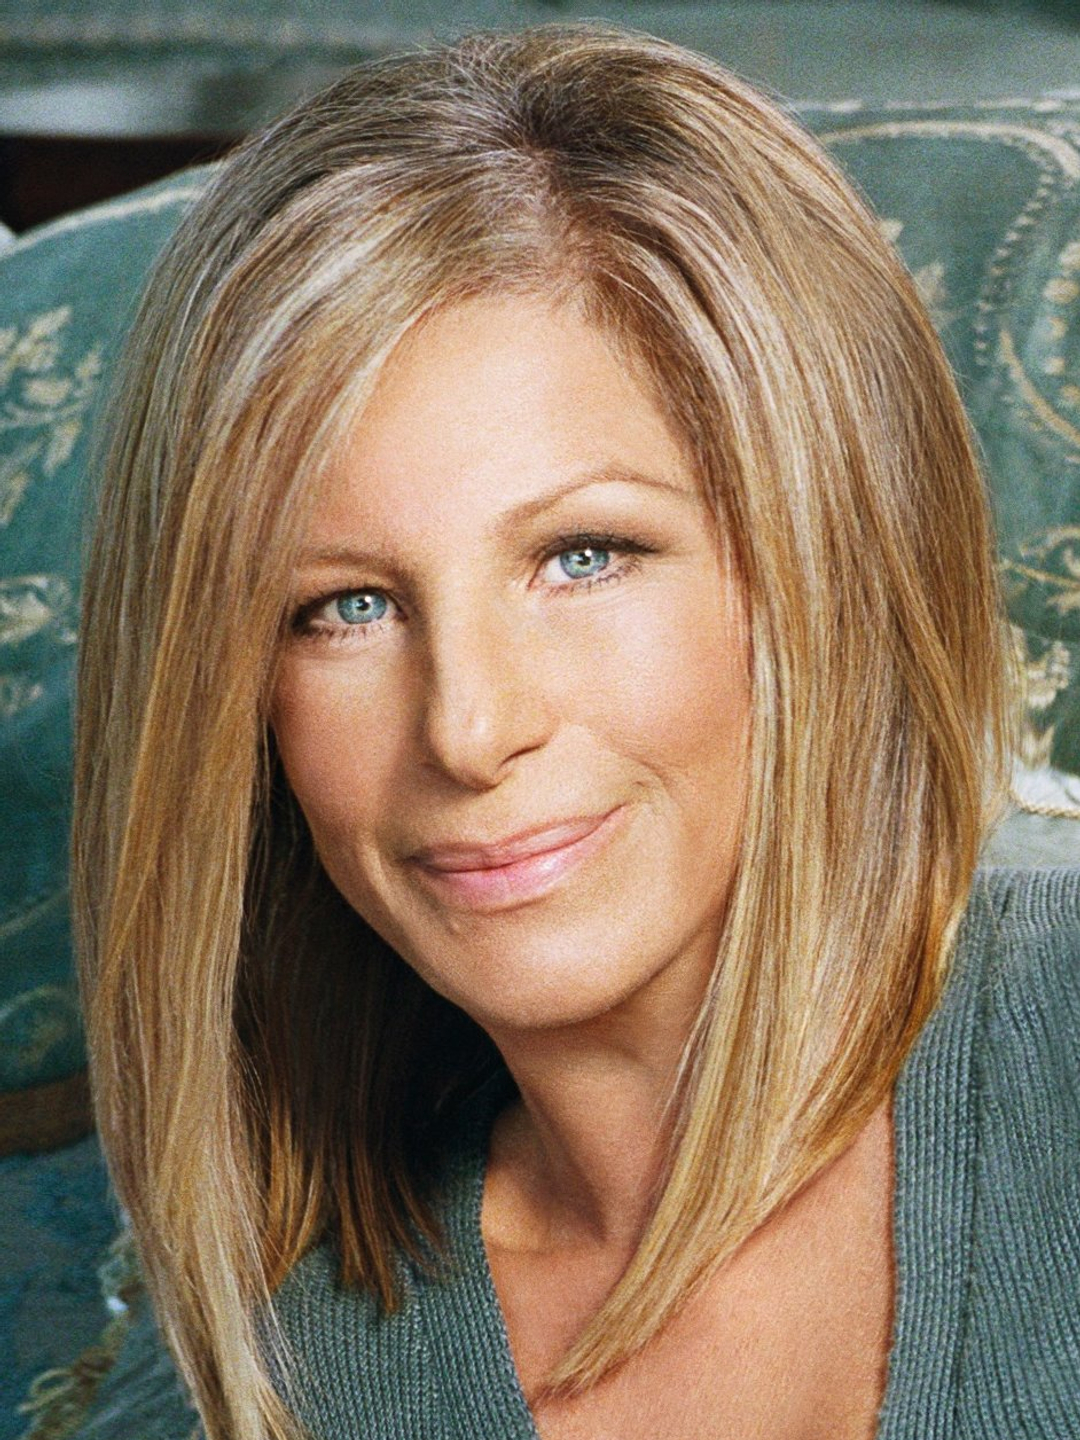 Barbra Streisand appearance